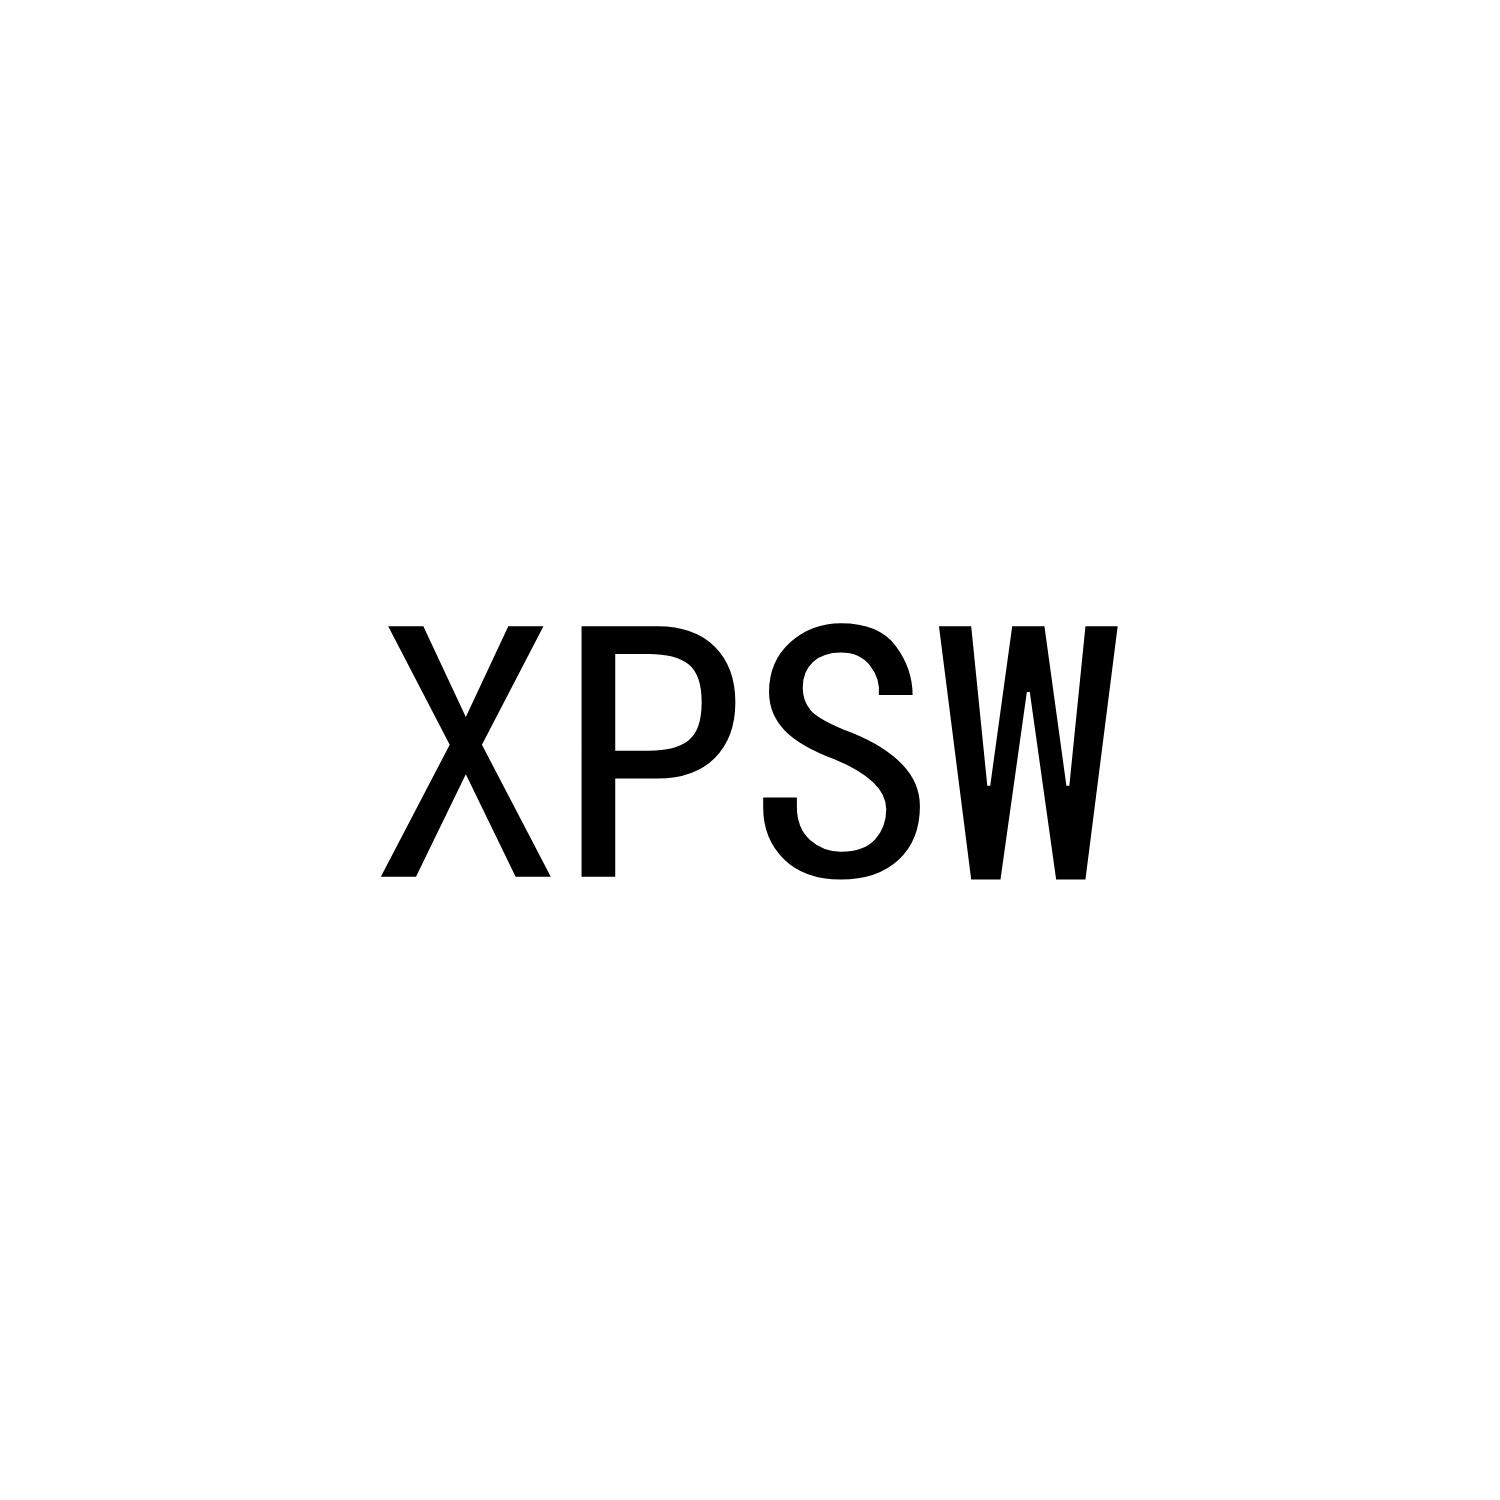 XPSW